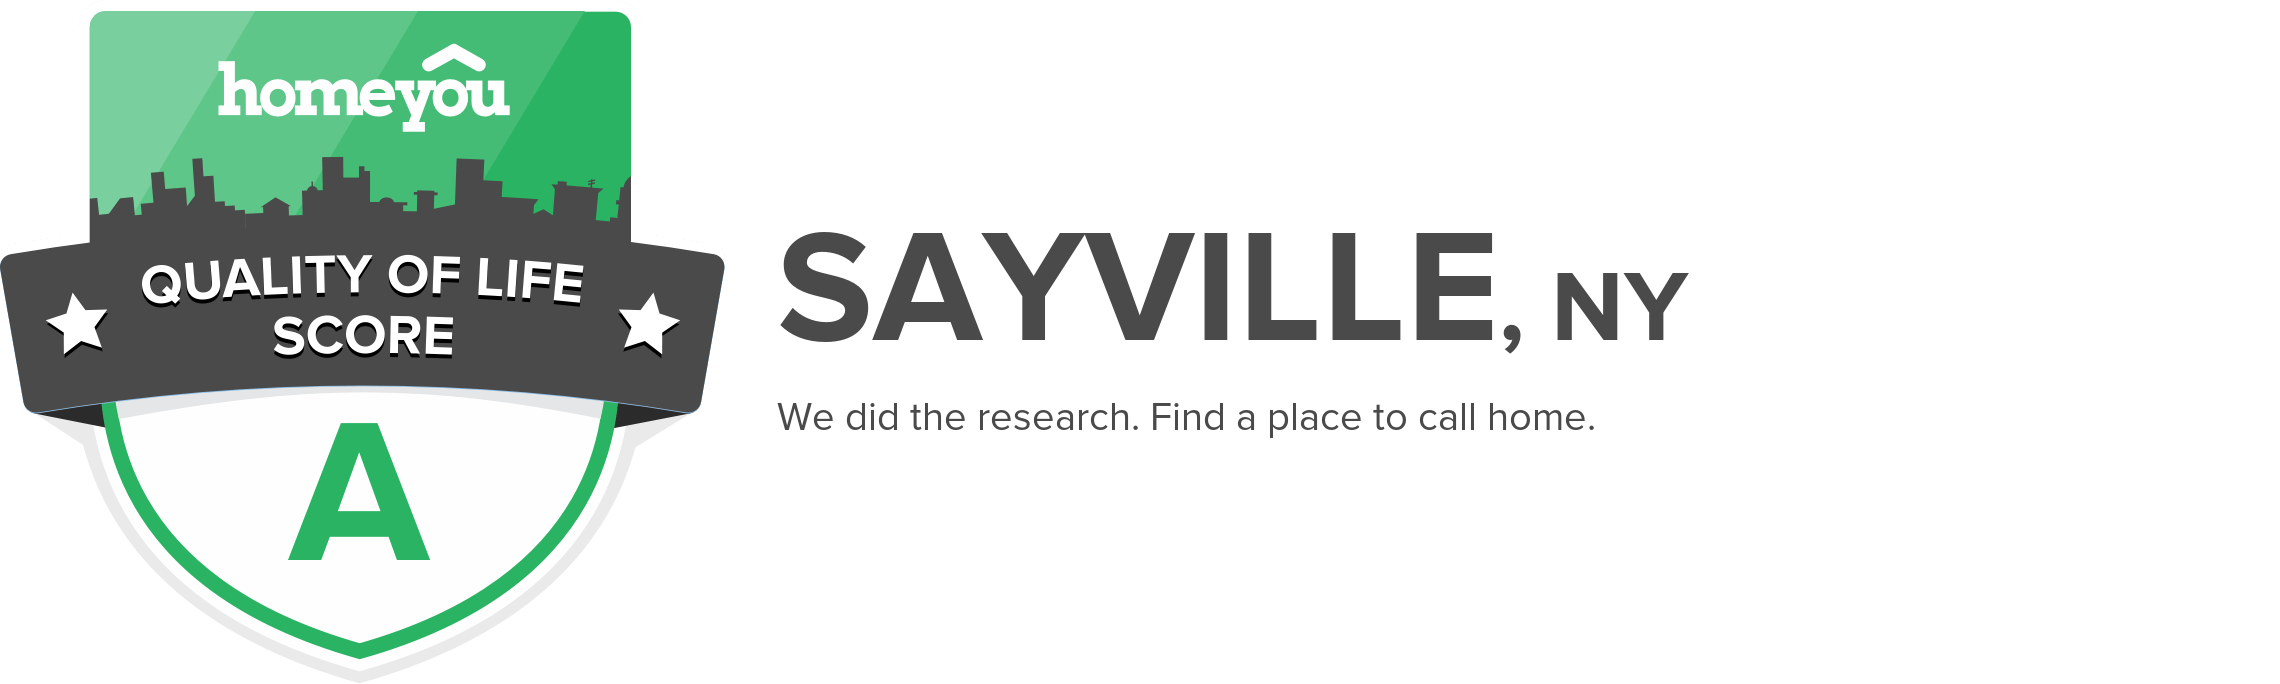 Sayville, NY